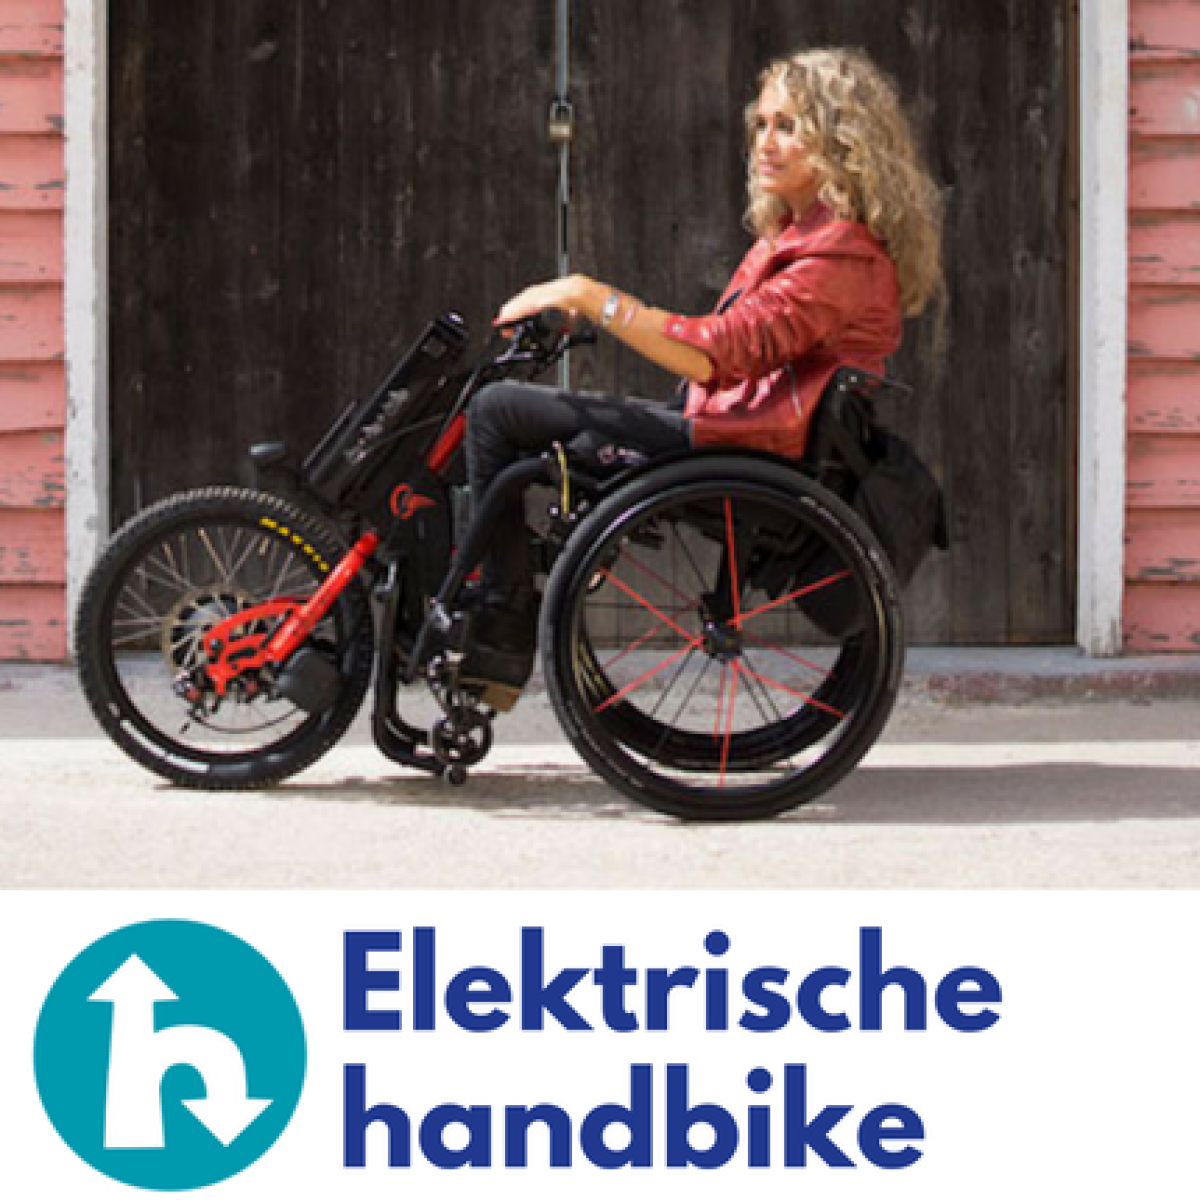 Keuzehulp elektrische handbike